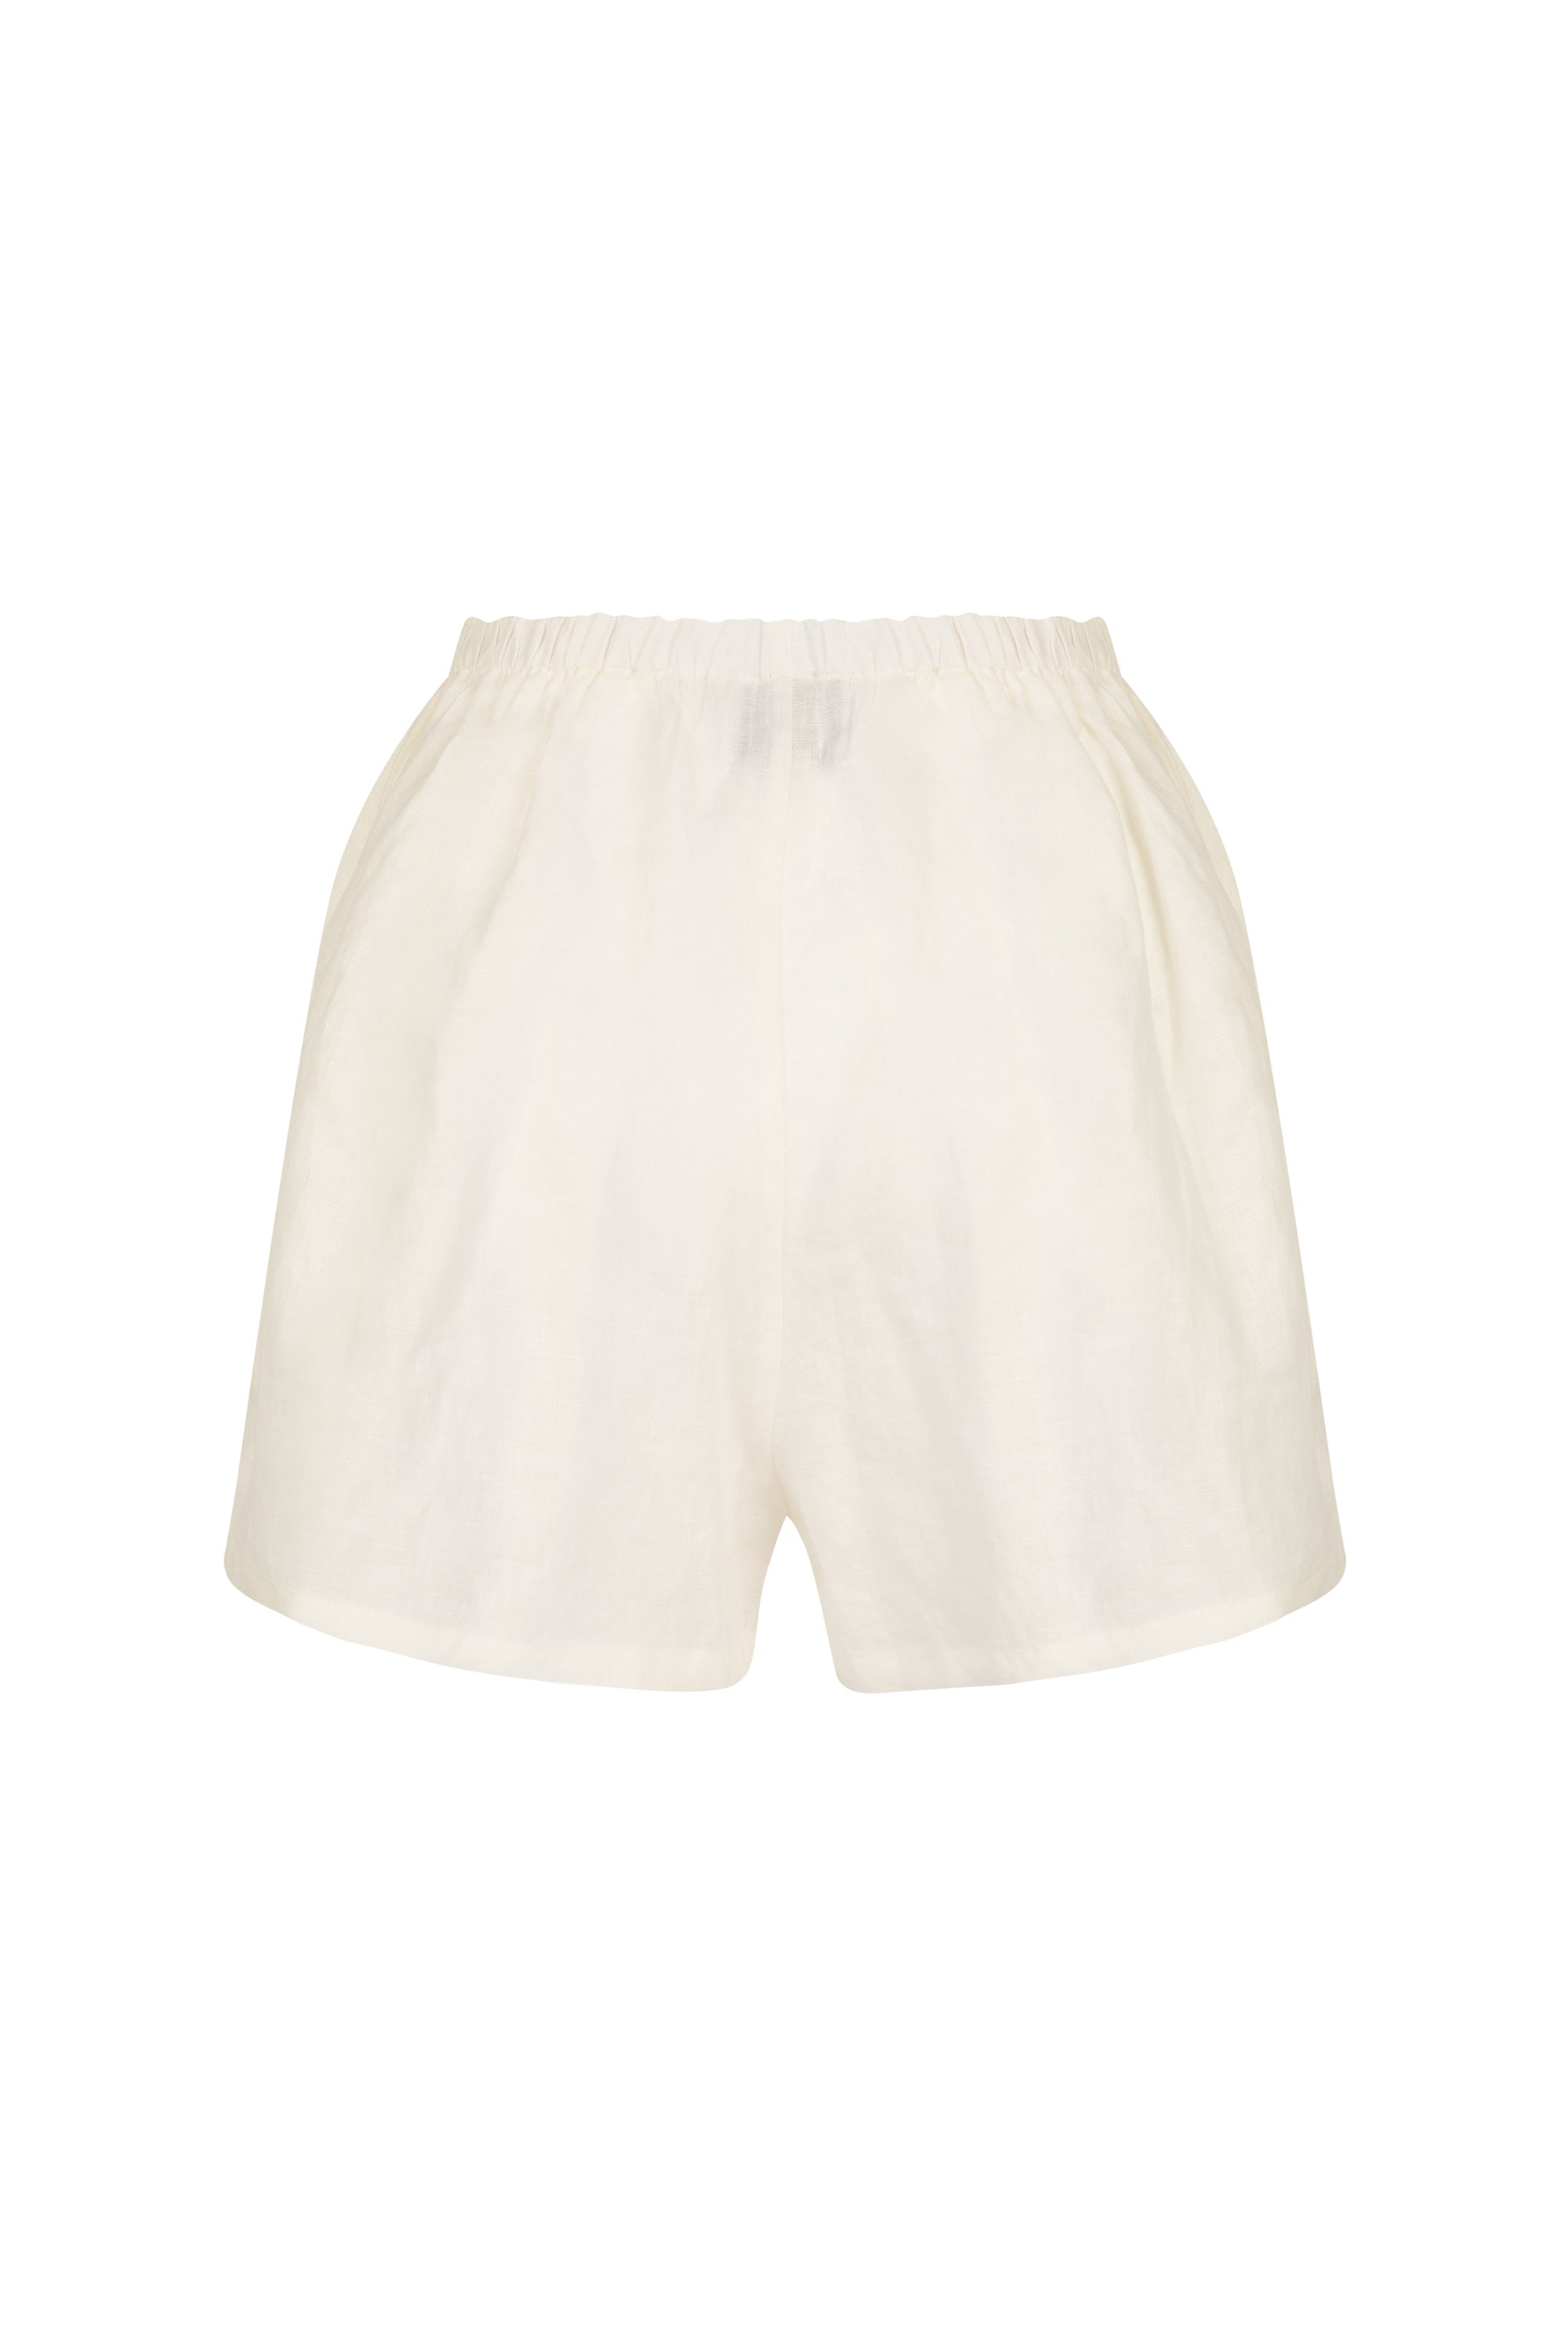 white linen shorts